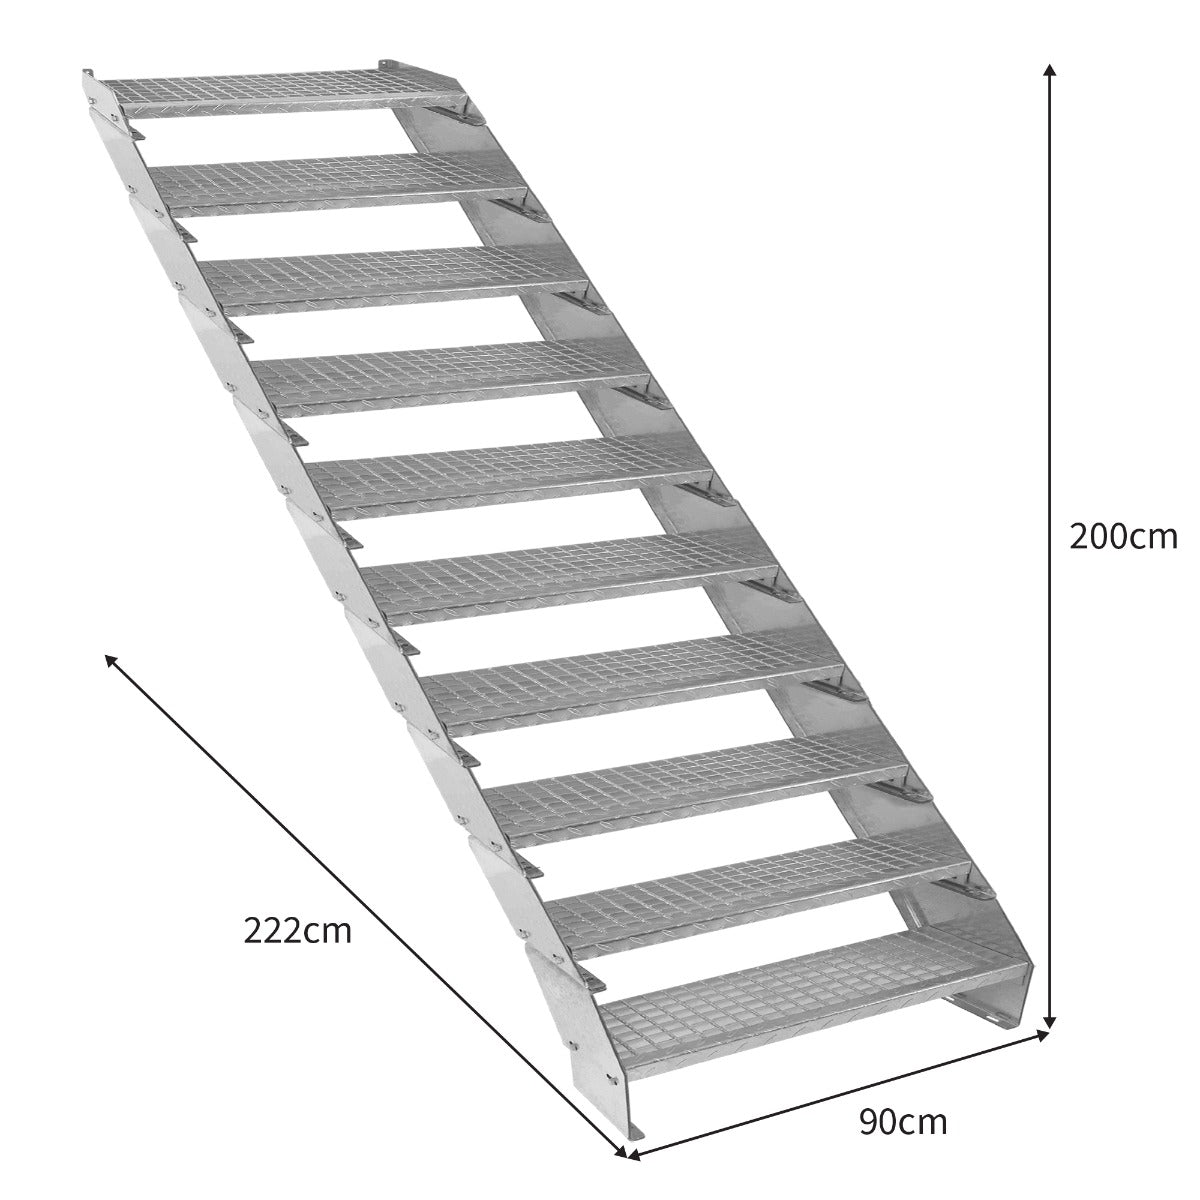 Escalera Galvanizada Ajustable de 10 Escalones– 900mm de Ancho